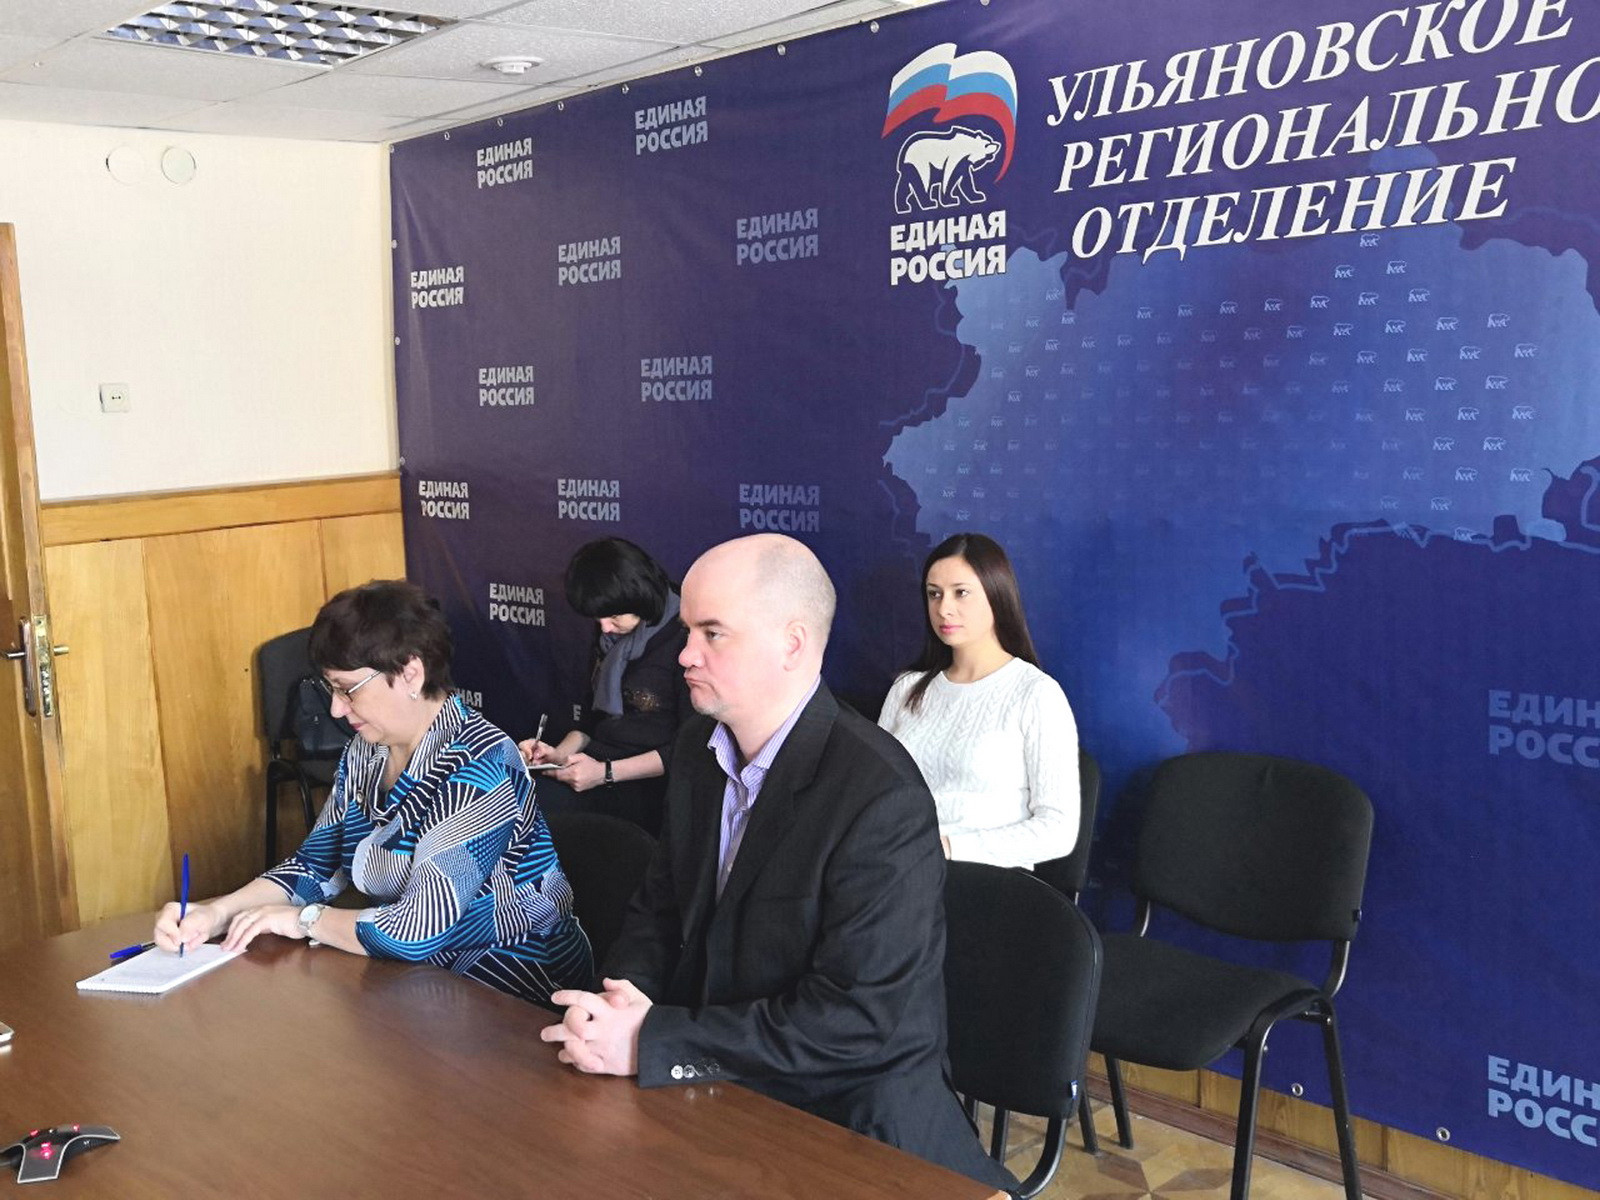 Обманутым дольщикам Ульяновска помогут депутаты Госдумы и лучшие юристы АЮР